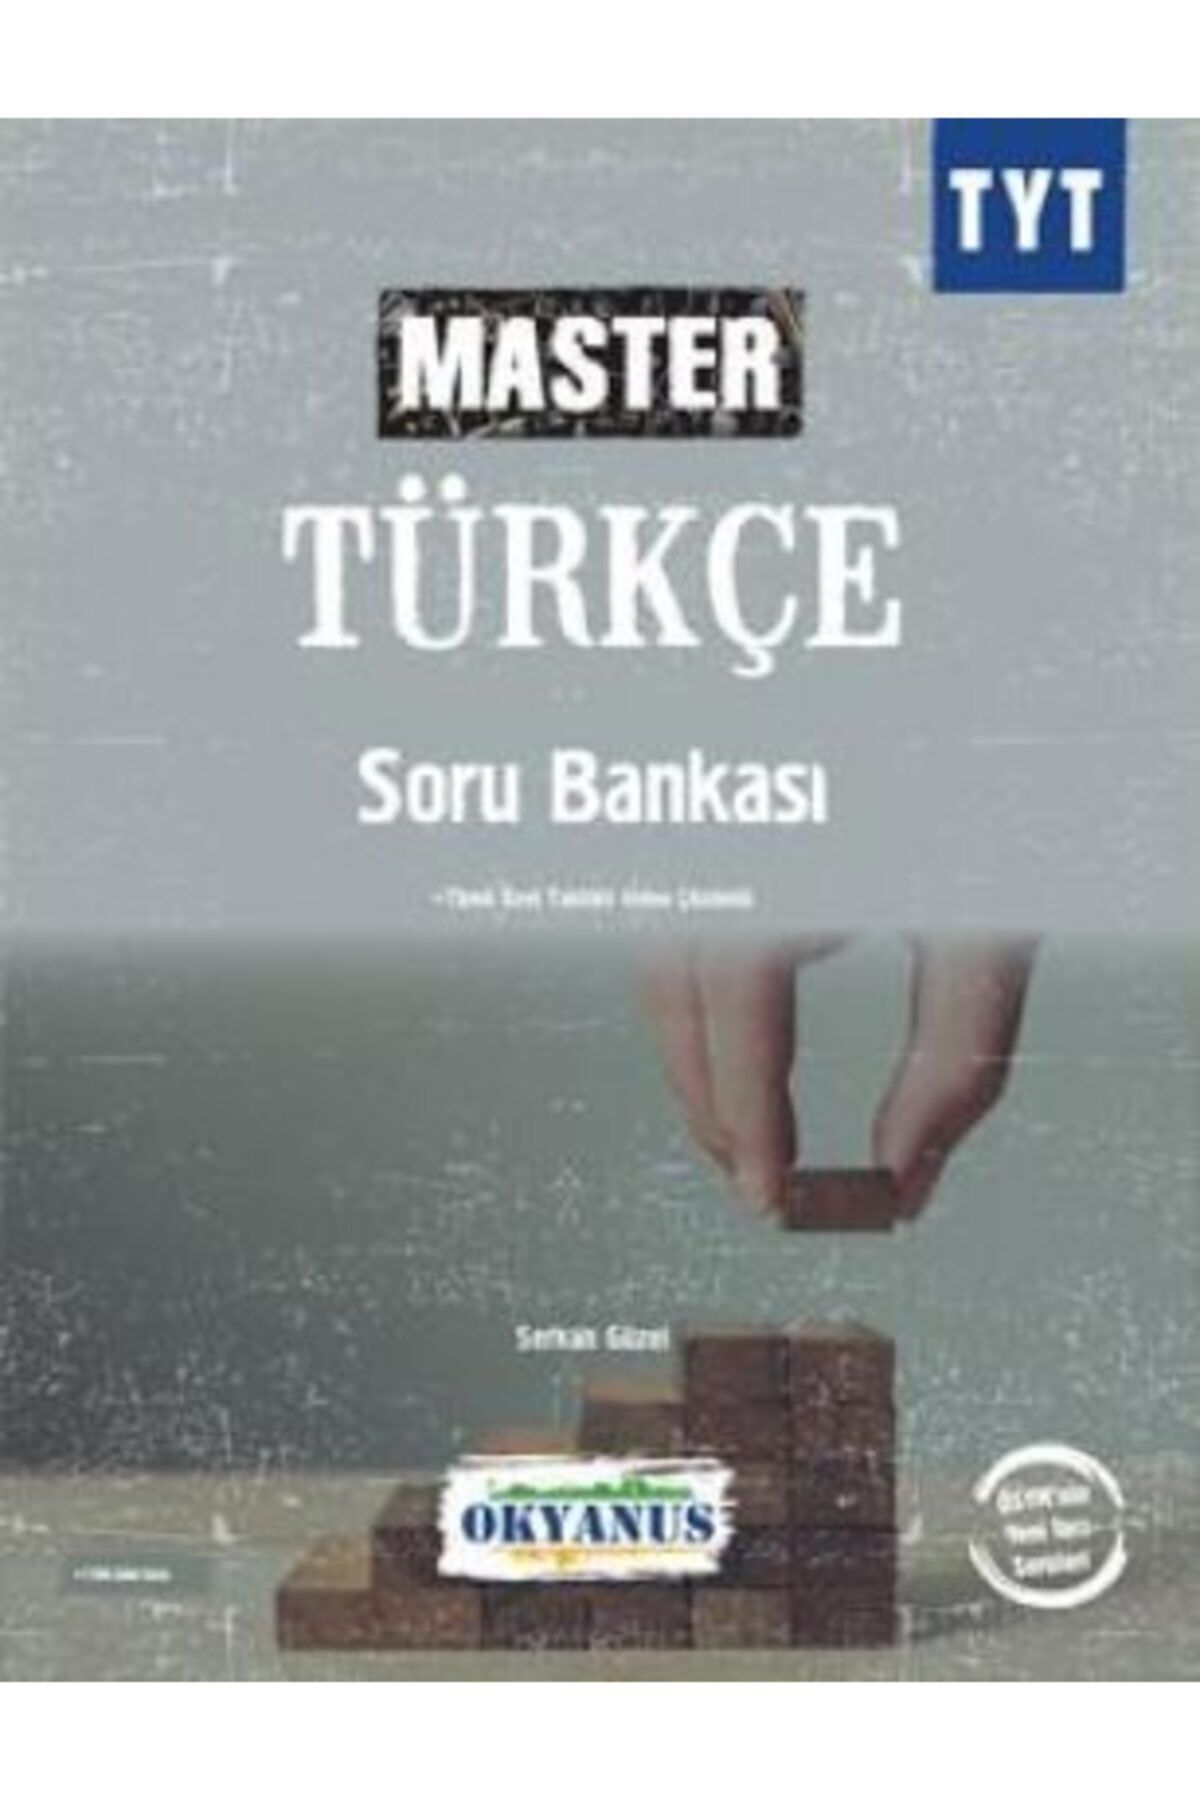 Okyanus Tyt Master Türkçe Soru Bankası